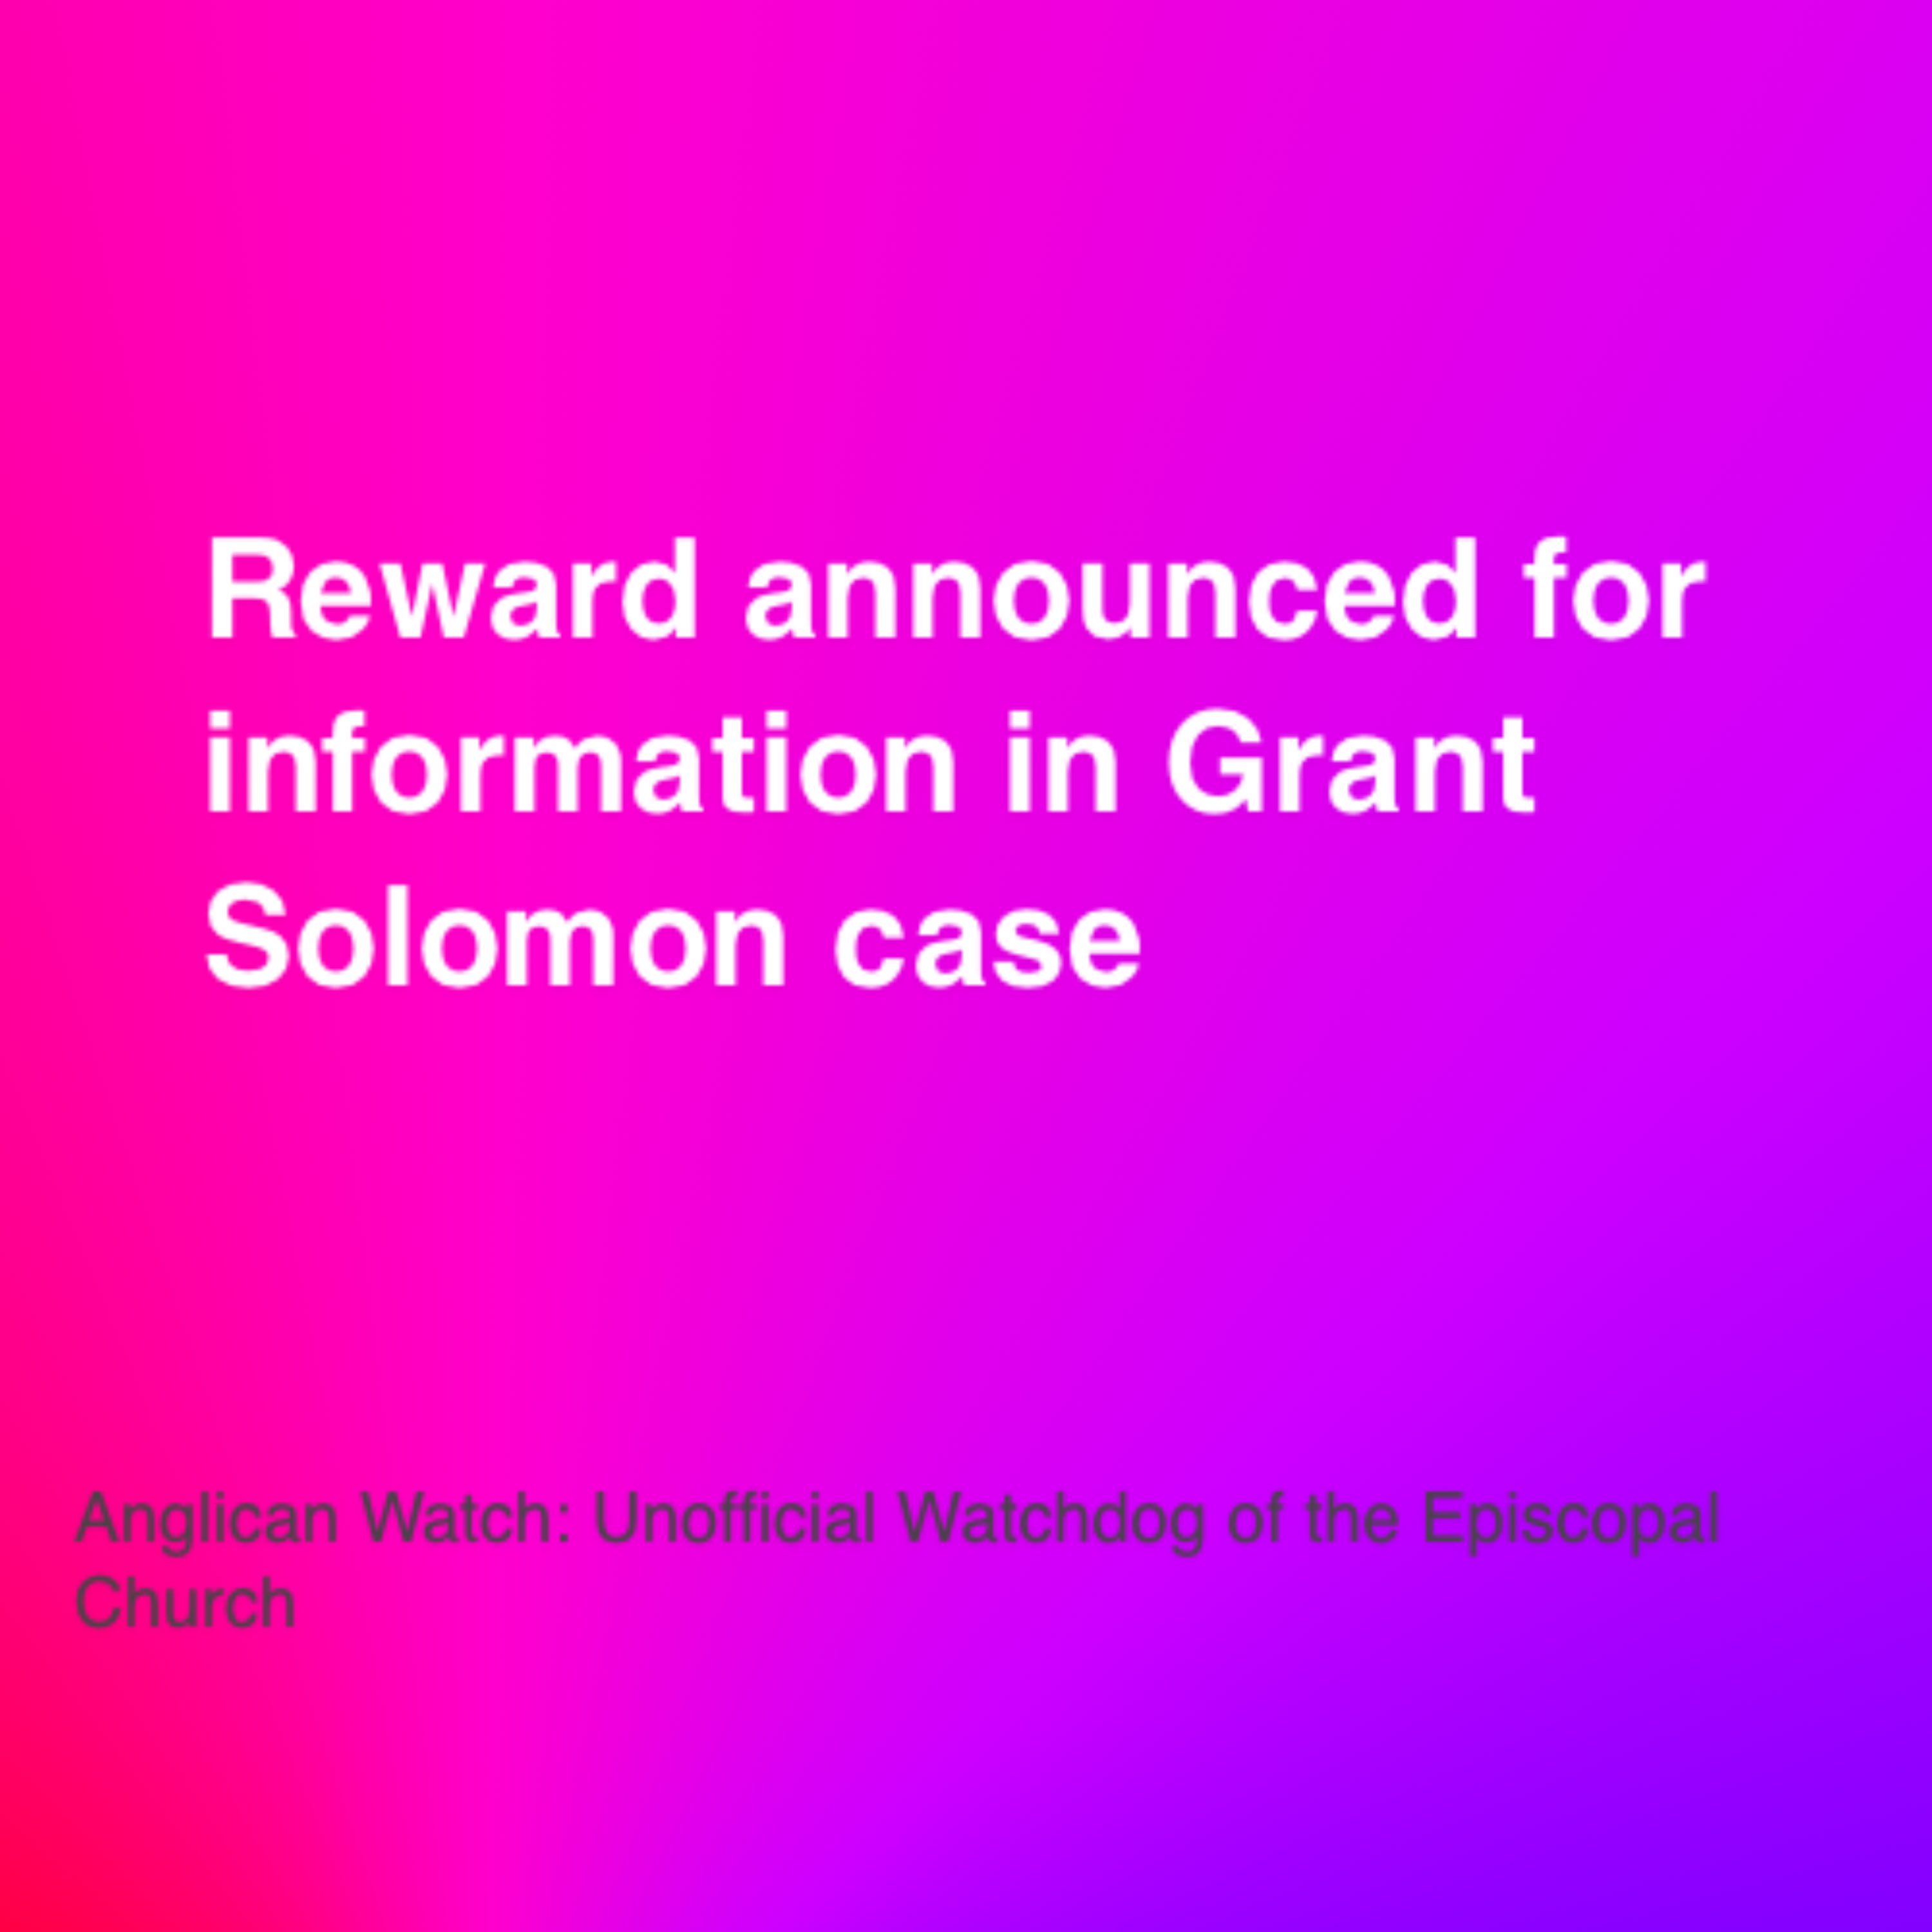 Reward announced for information in Grant Solomon case